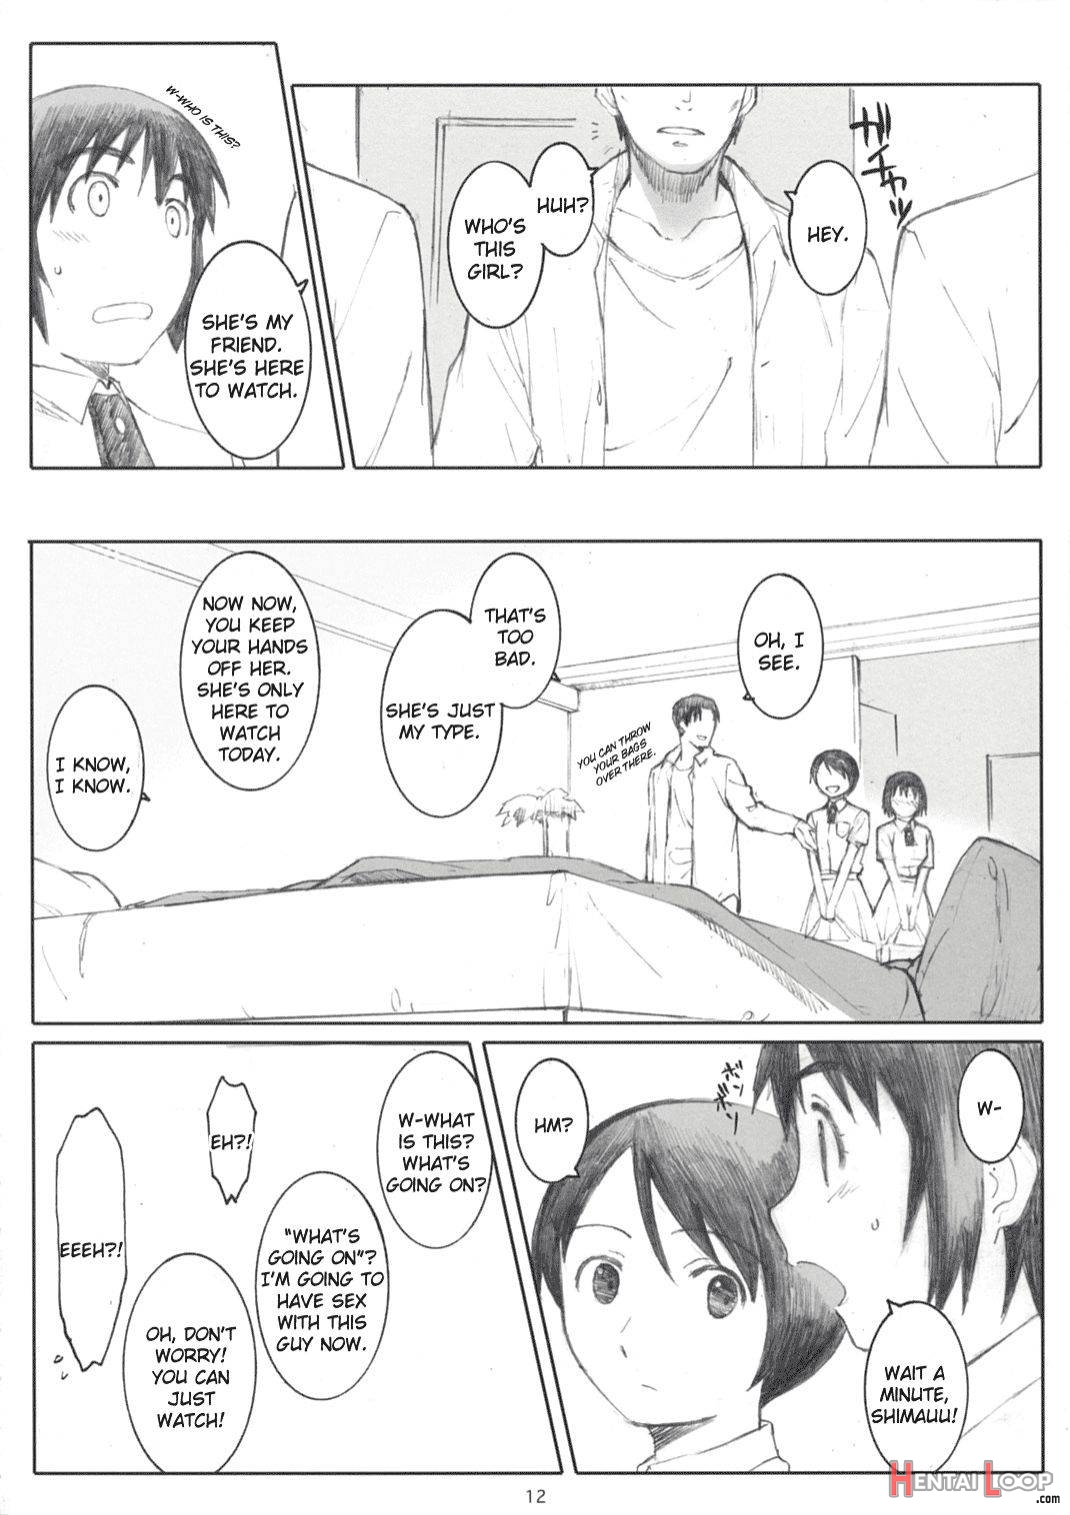 Natsukaze! 2 page 11